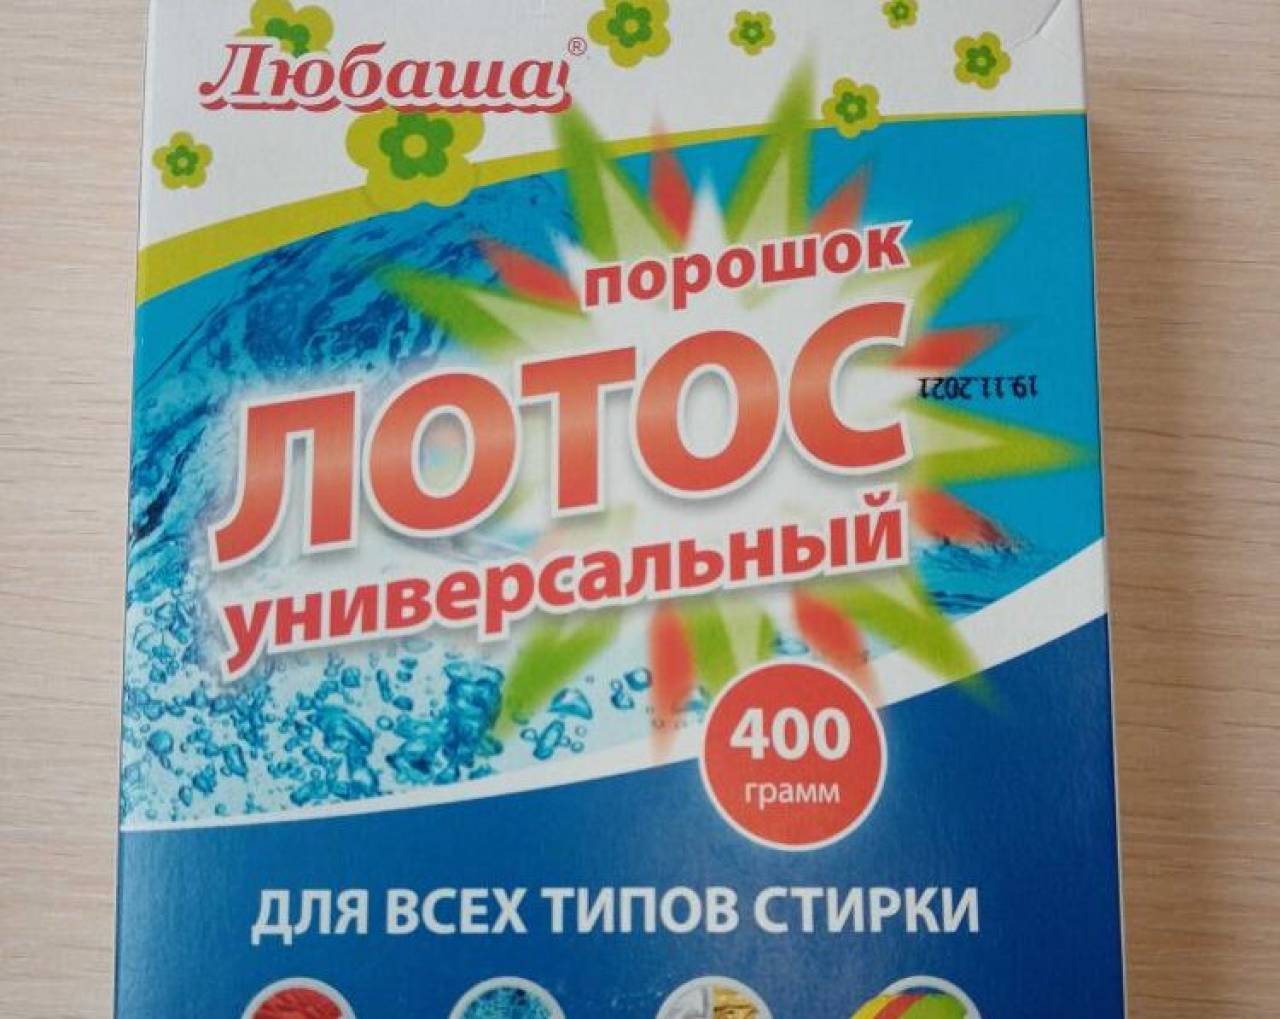 В Беларуси запретили продавать популярные российские порошок и средство для стирки, а в Гродно нашли опасные сладости, икру, котлеты и игрушки